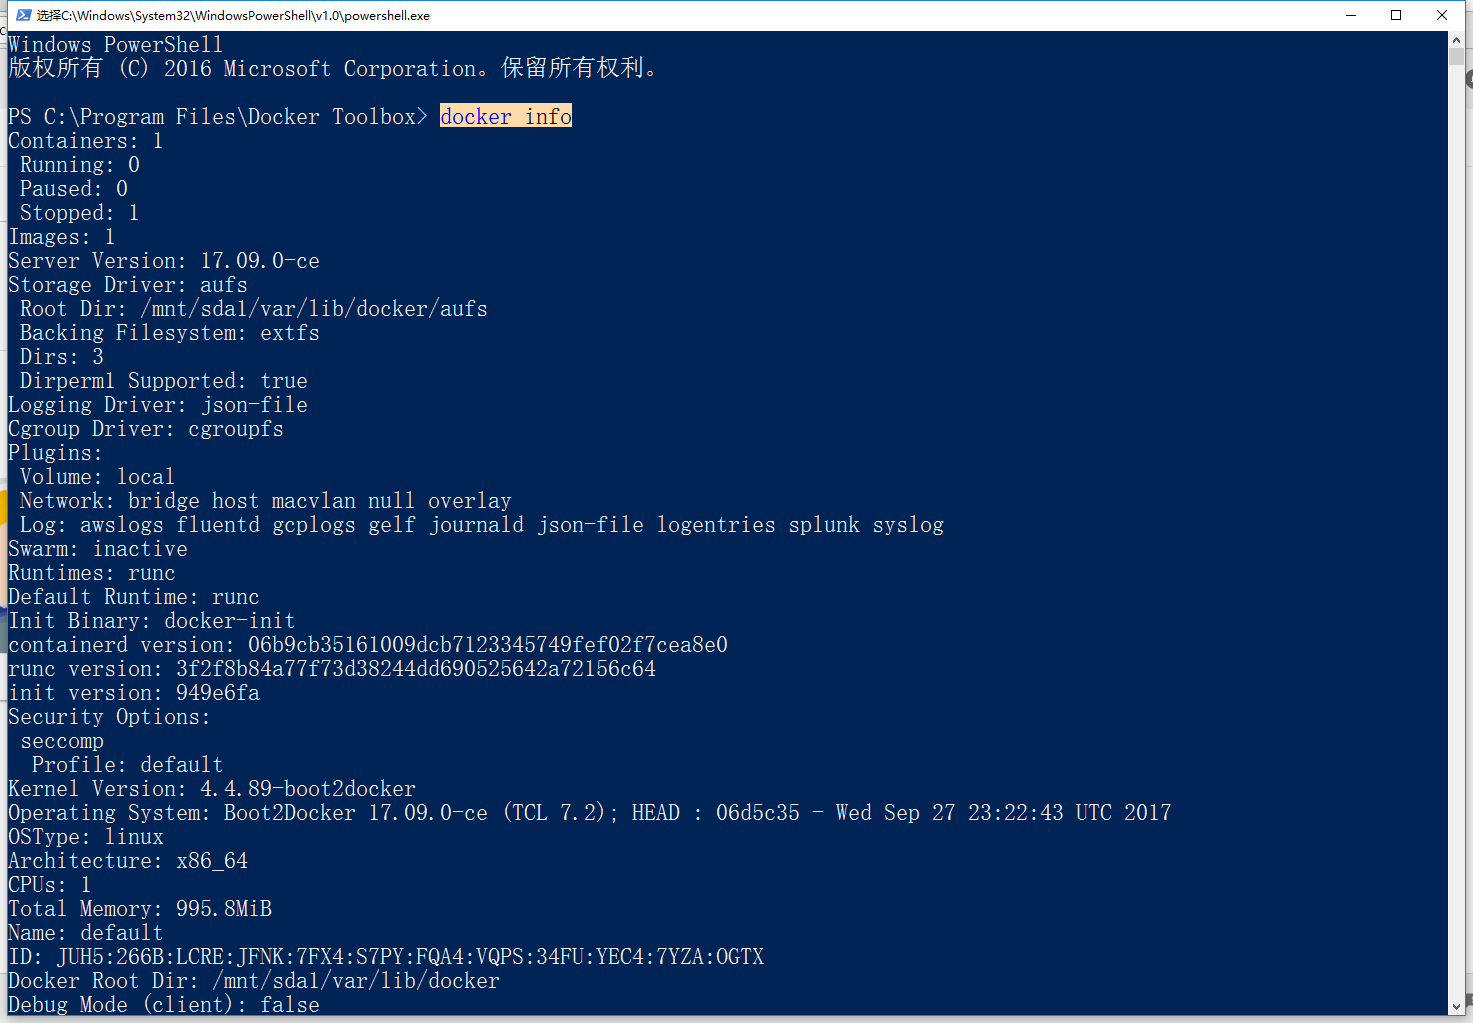 实则启动Windows PowerShell，且进入了C:\Program Files\Docker Toolbox>，在此处运行 docker 命令与在 Docker Quickstart Terminal 中运行是一致的，自行根据喜好选择了